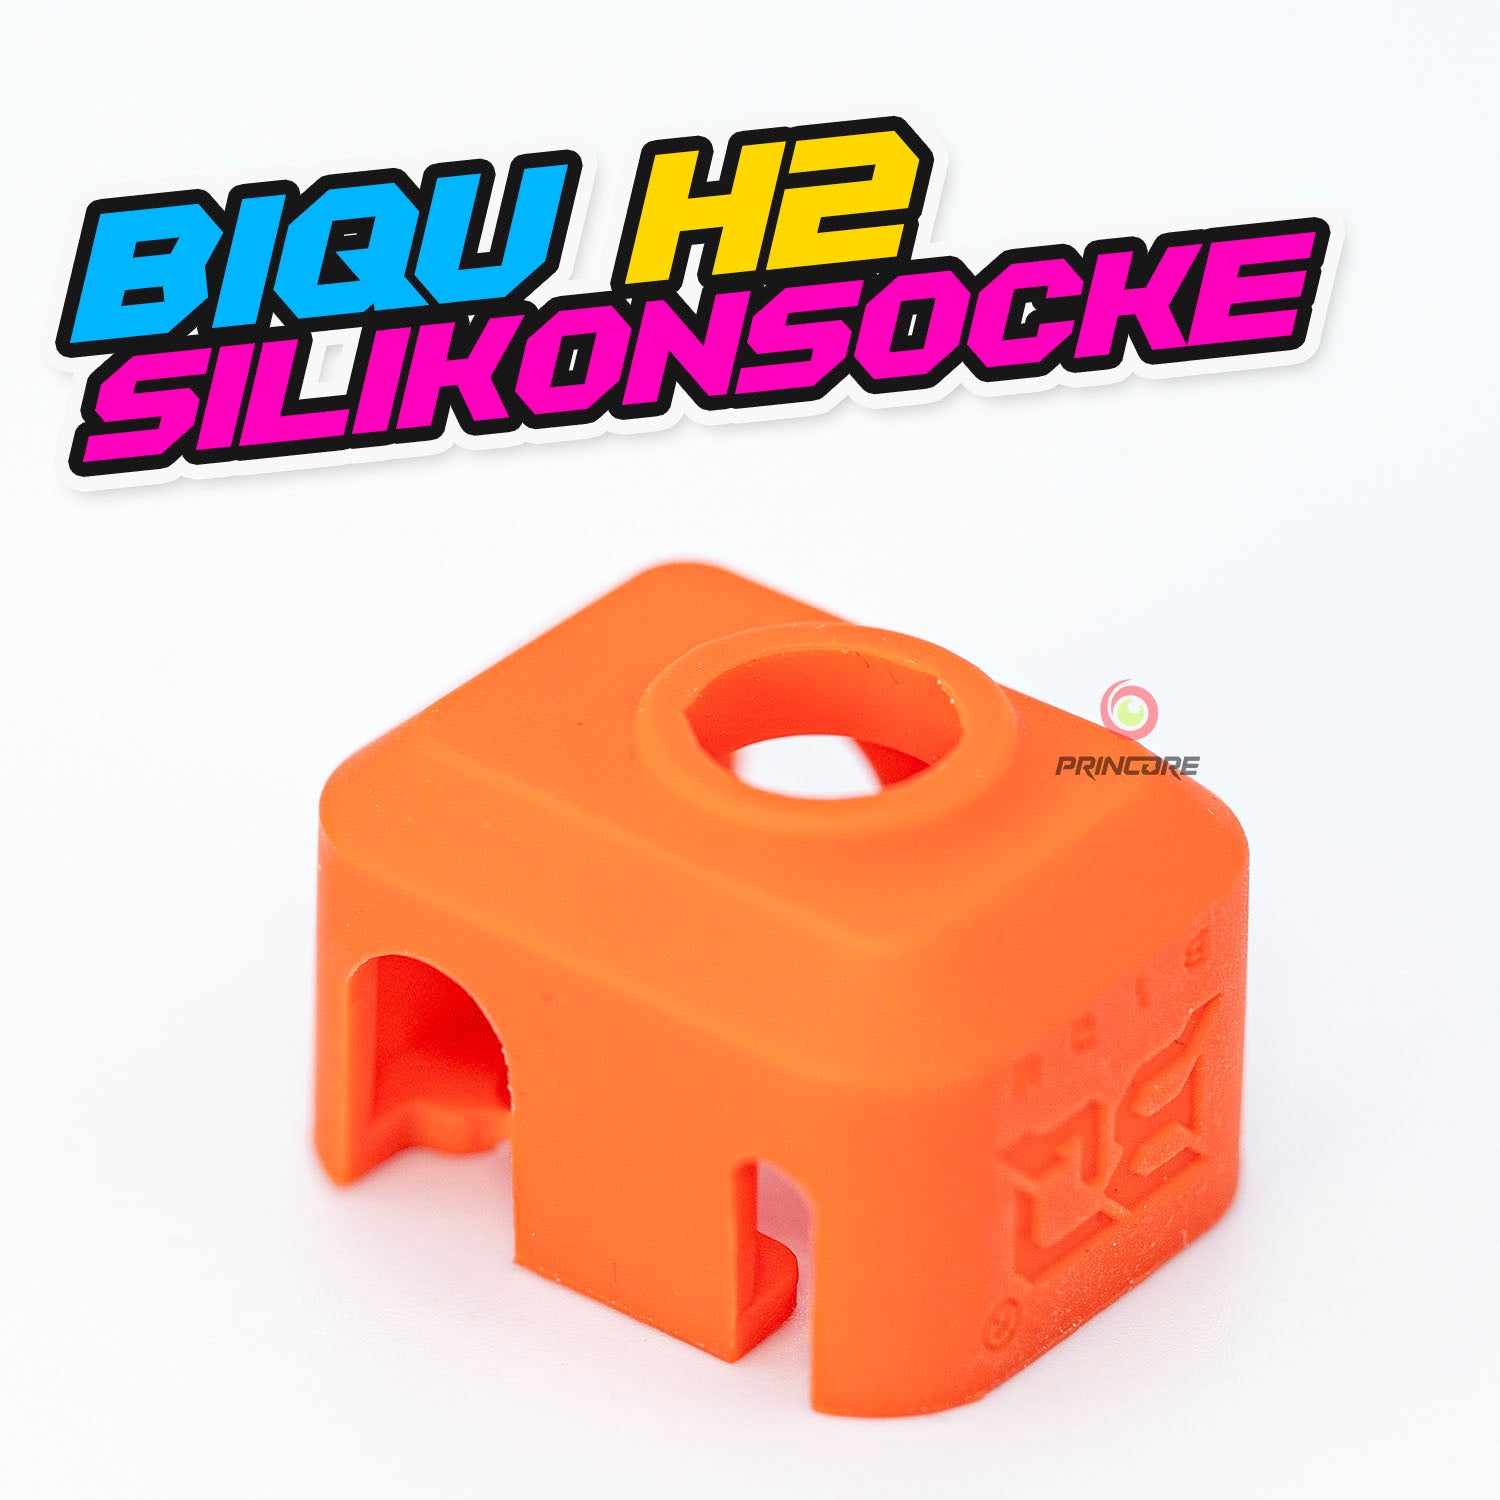 Silikonsocke Heizblock BIQU H2 V2